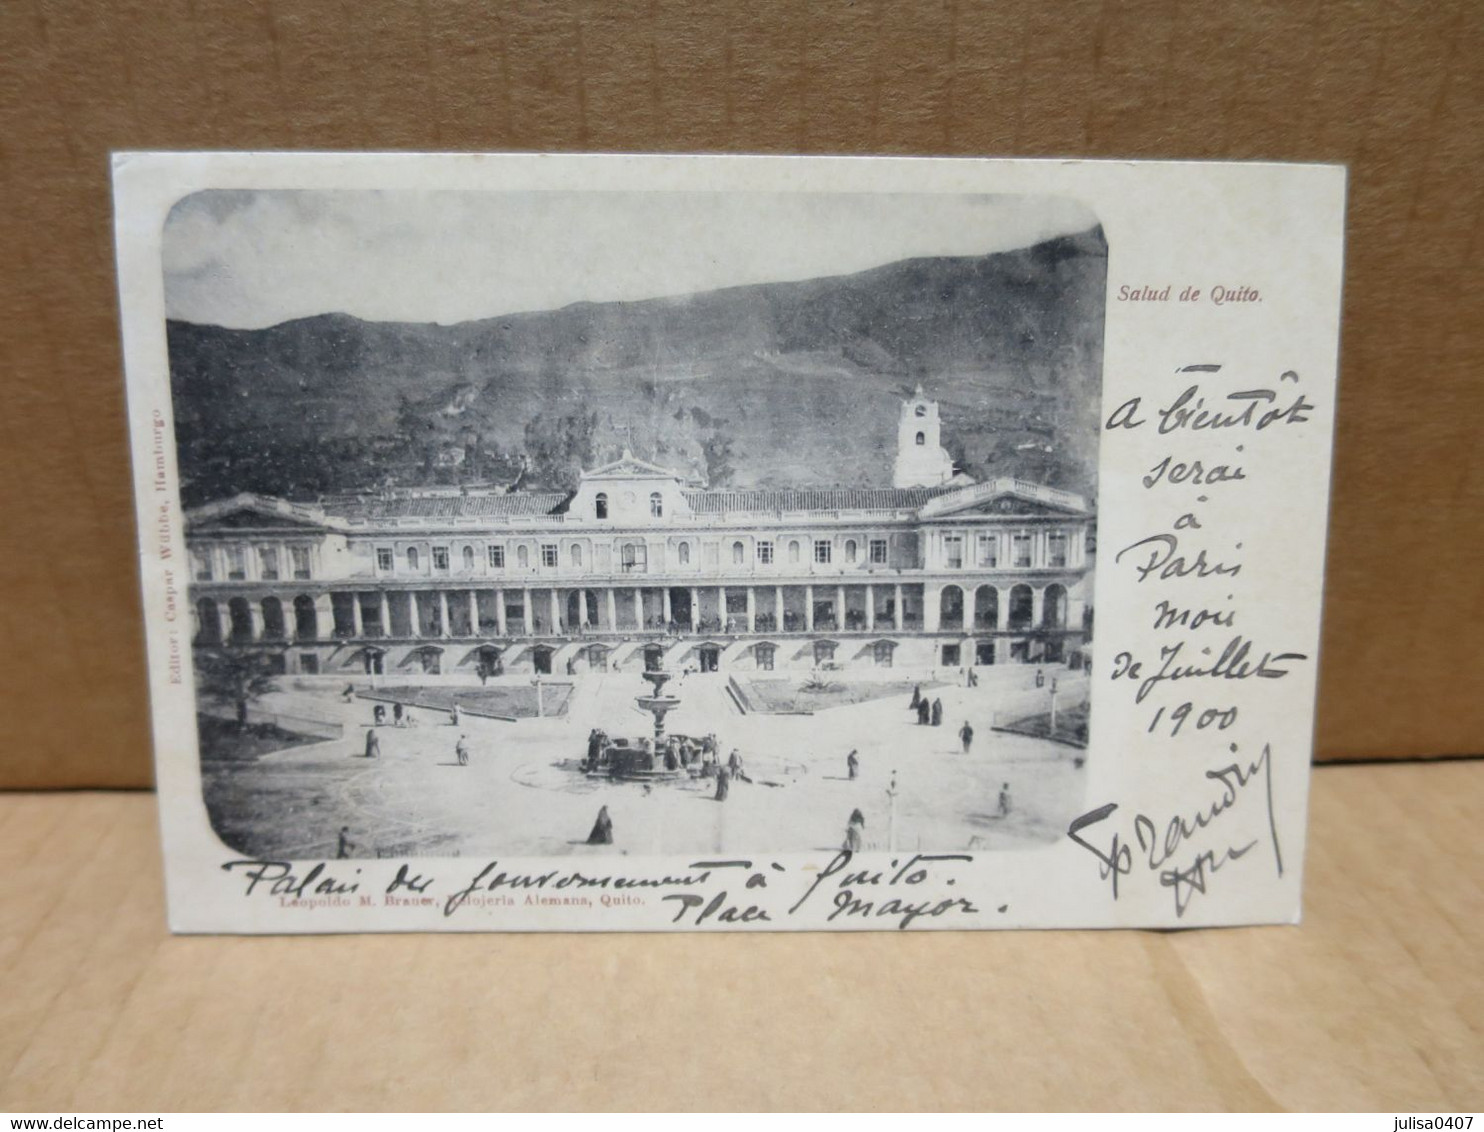 QUITO (Equateur) Place Palais 1900 - Ecuador